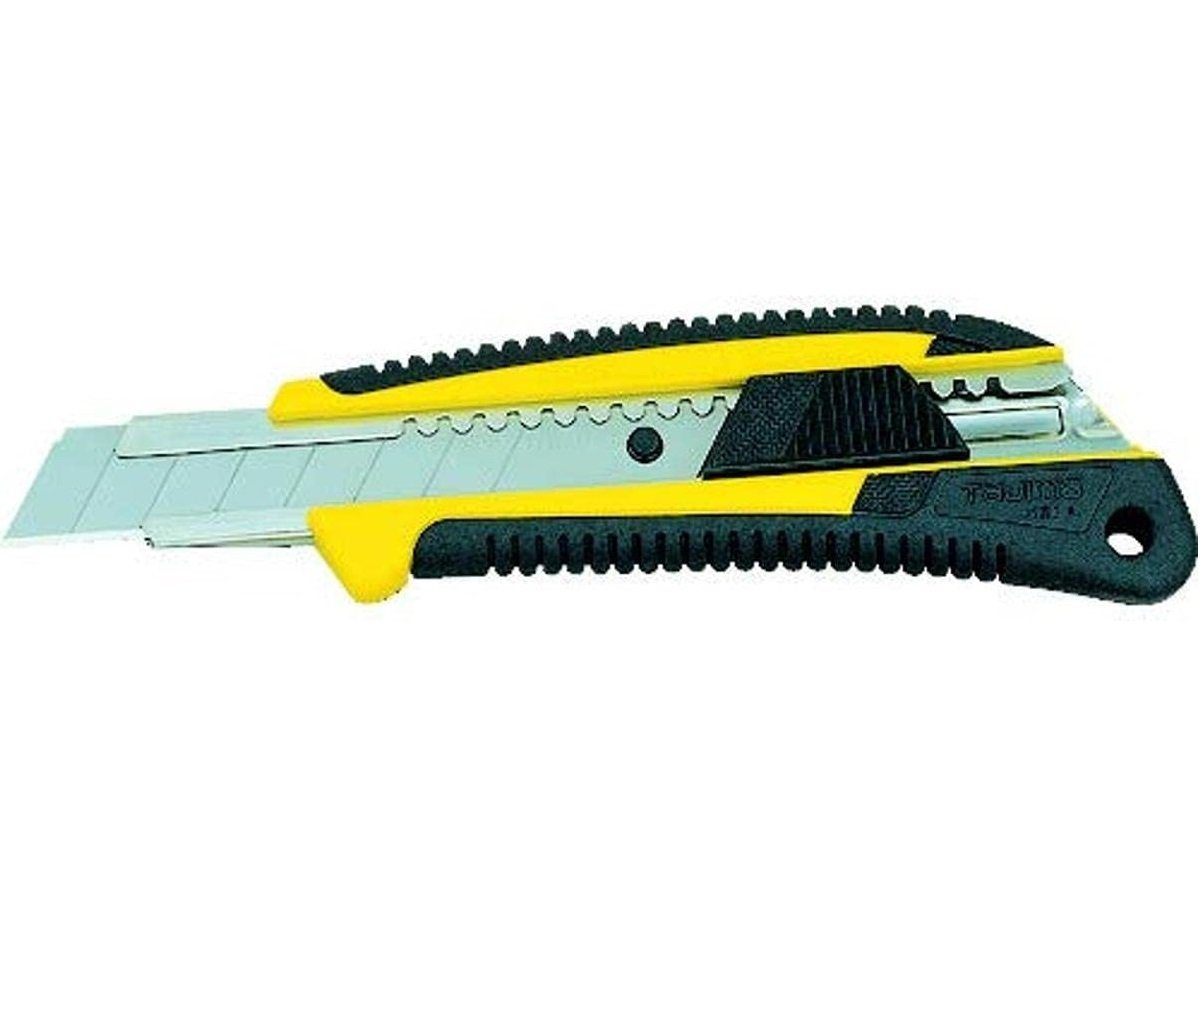 18mm, Teppichmesser Griff Cuttermesser ergonomischer Tajima